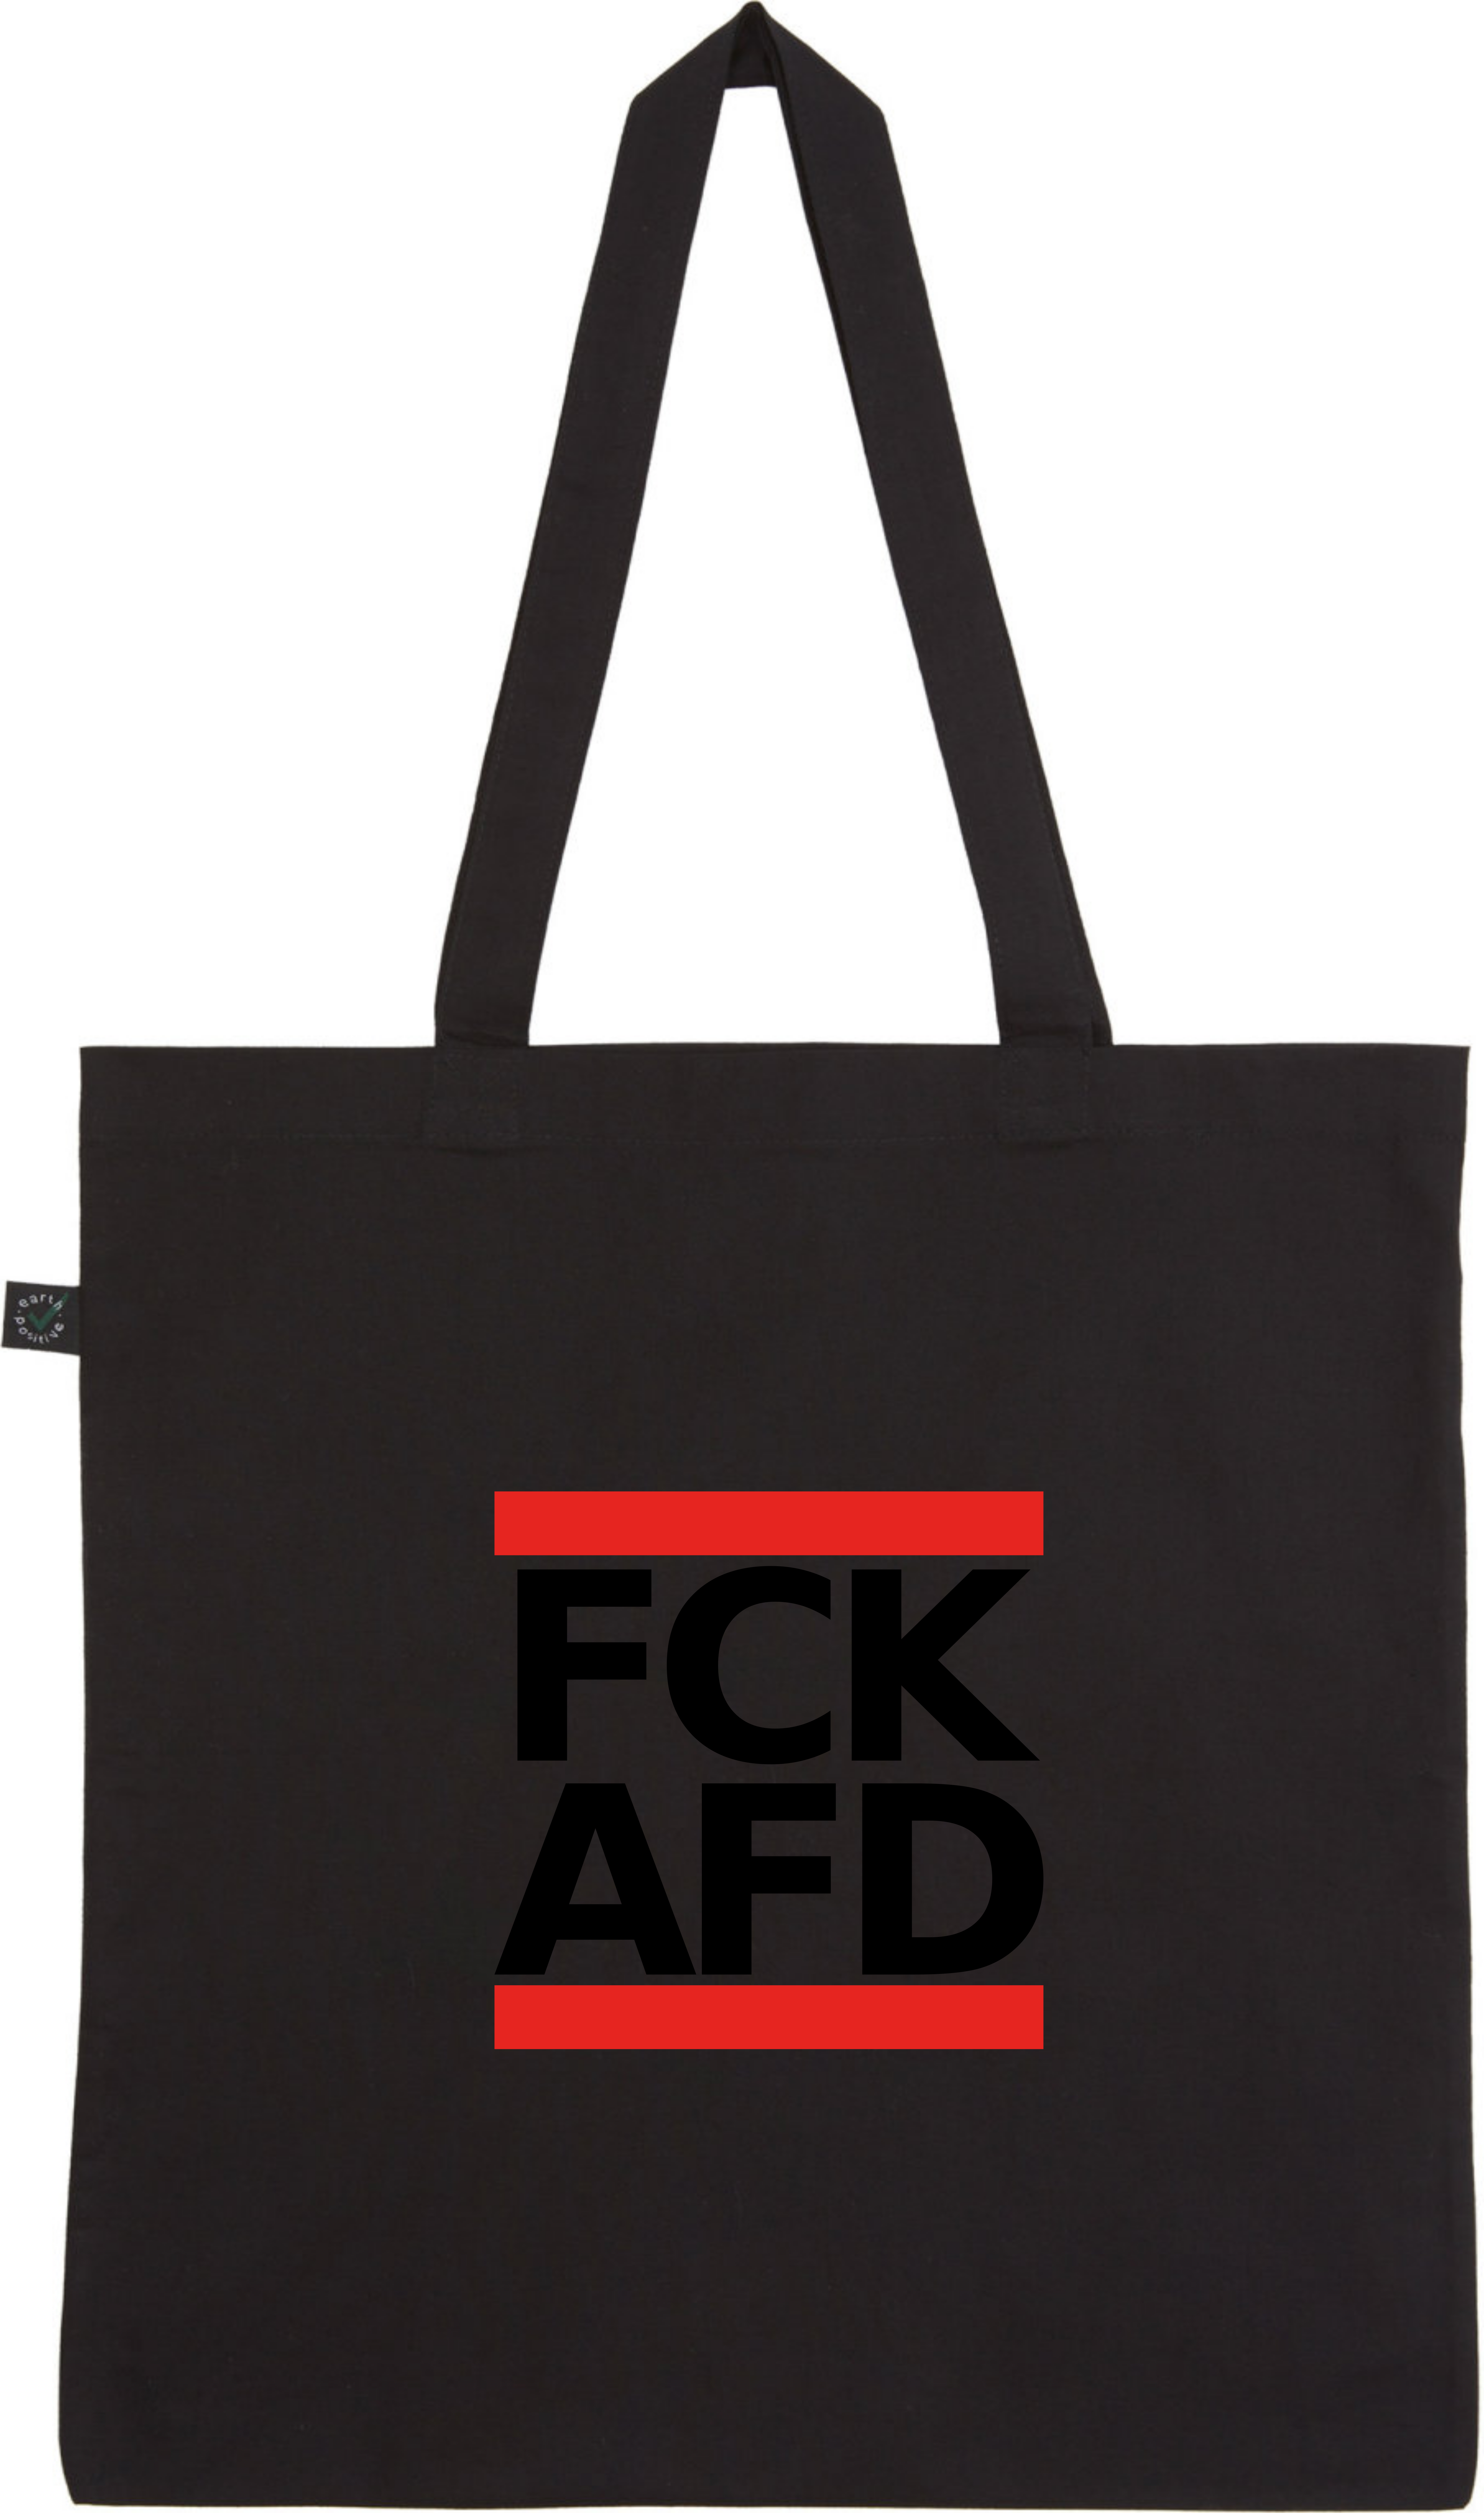 FCK AFD | Tragetasche / Tote Bag